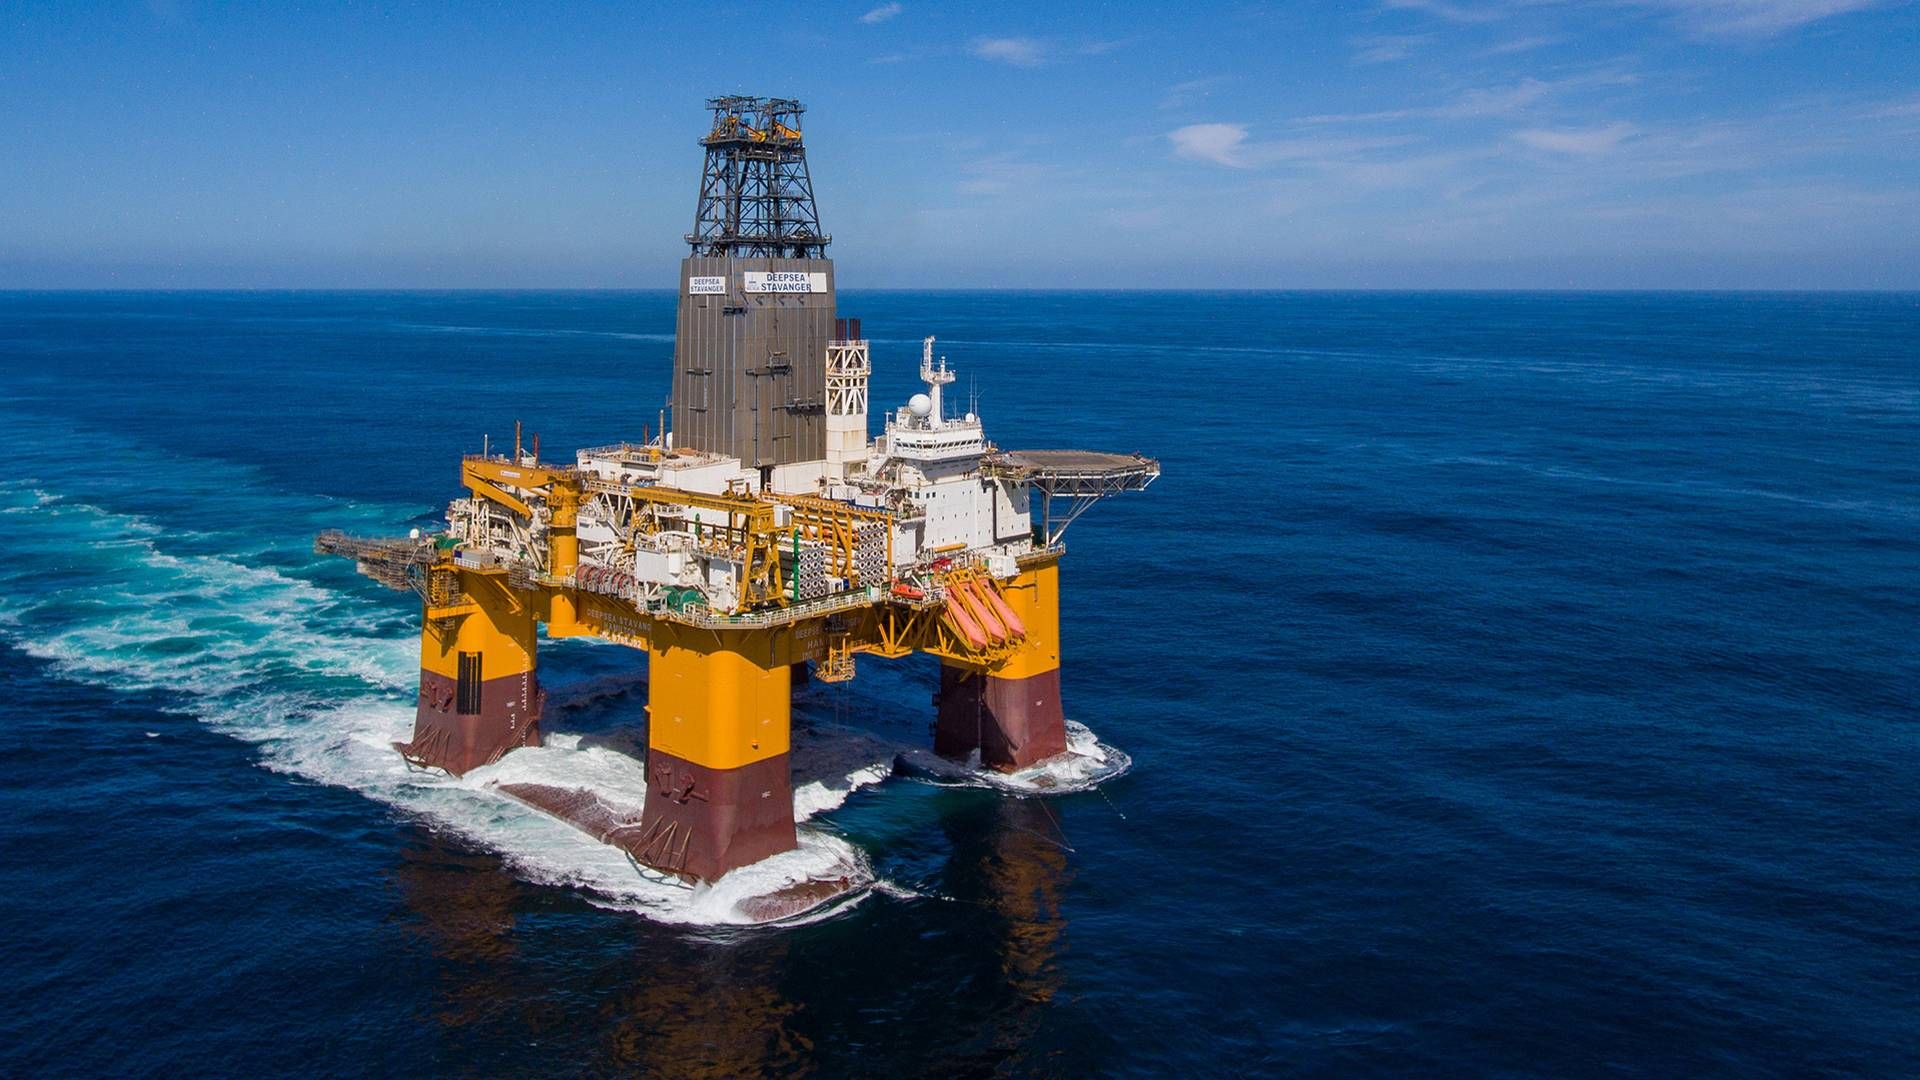 AVSLUTTET: Deepsea Stavanger har avsluttet letingen etter olje og gass i lisensområde 923 i Nordsjøen. Brønnen er plugget igjen permanent, og forlatt. | Foto: Odfjell Drilling